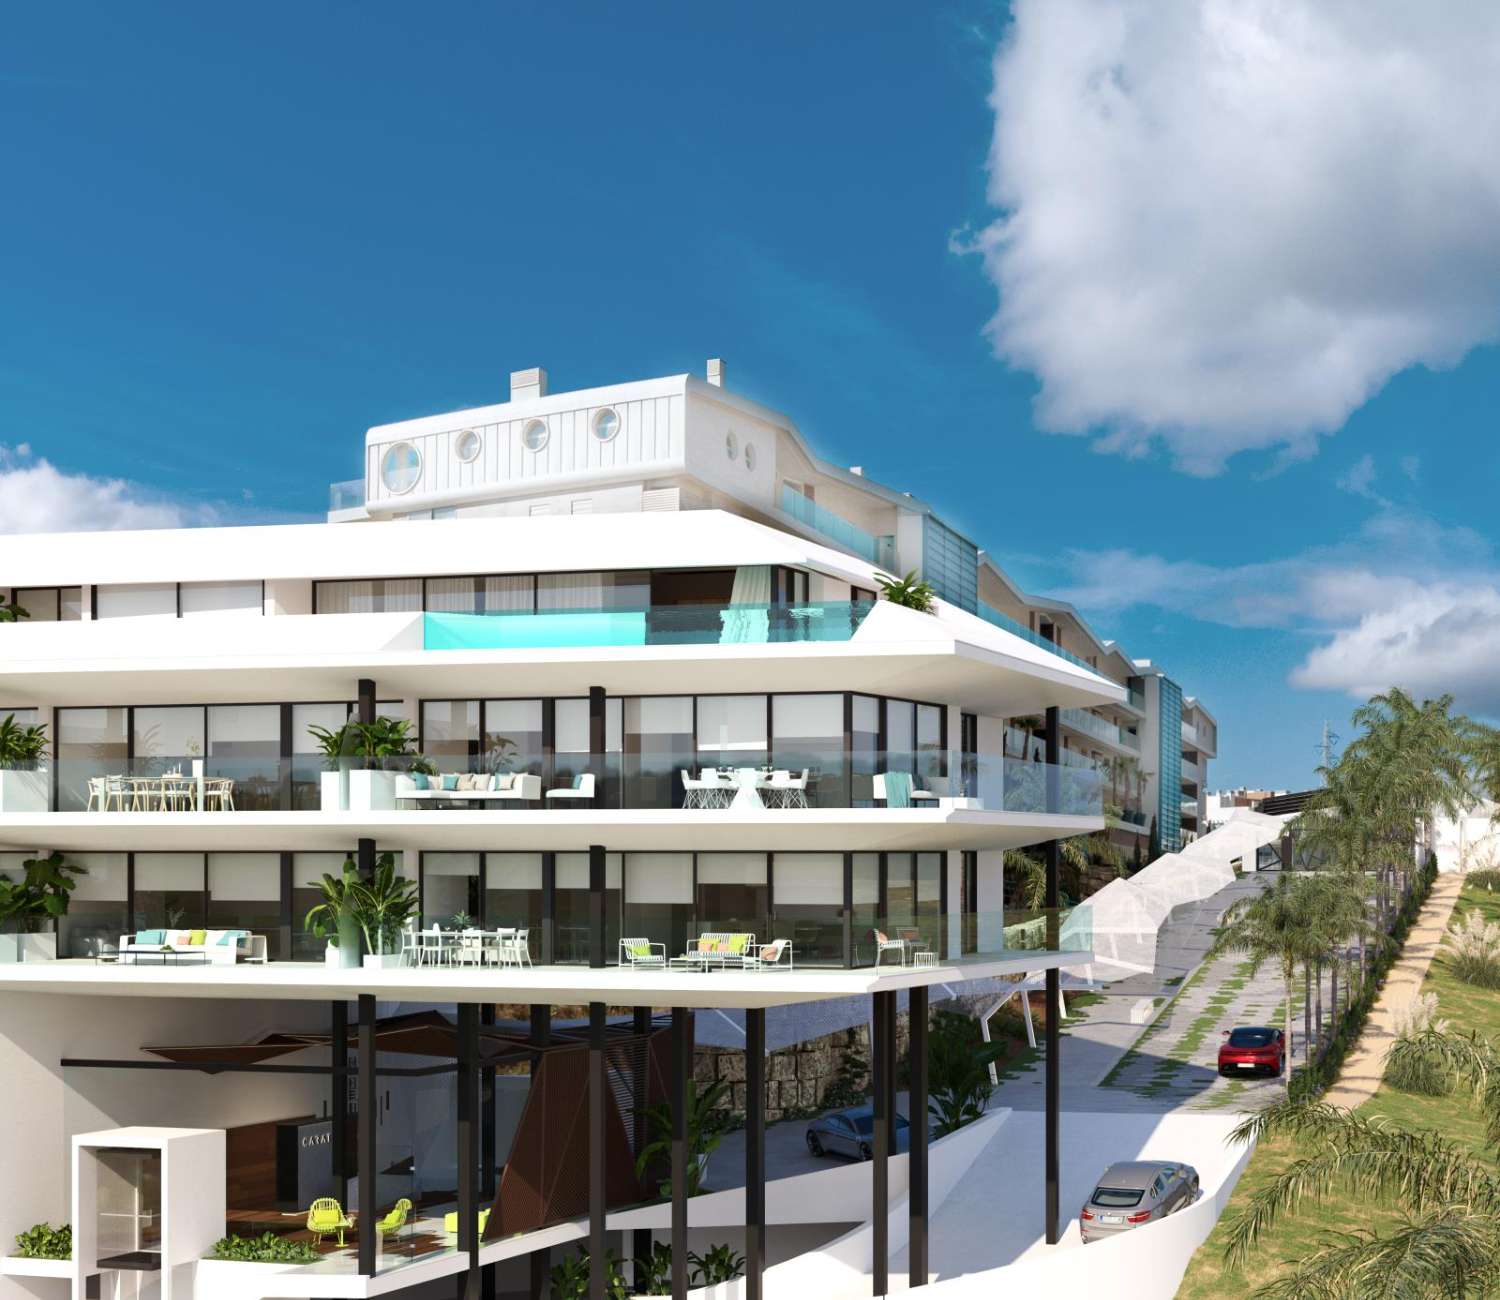 Spektakulær 3 roms penthouse med luksuriøse kvaliteter og havutsikt, terrasse på 60 meter